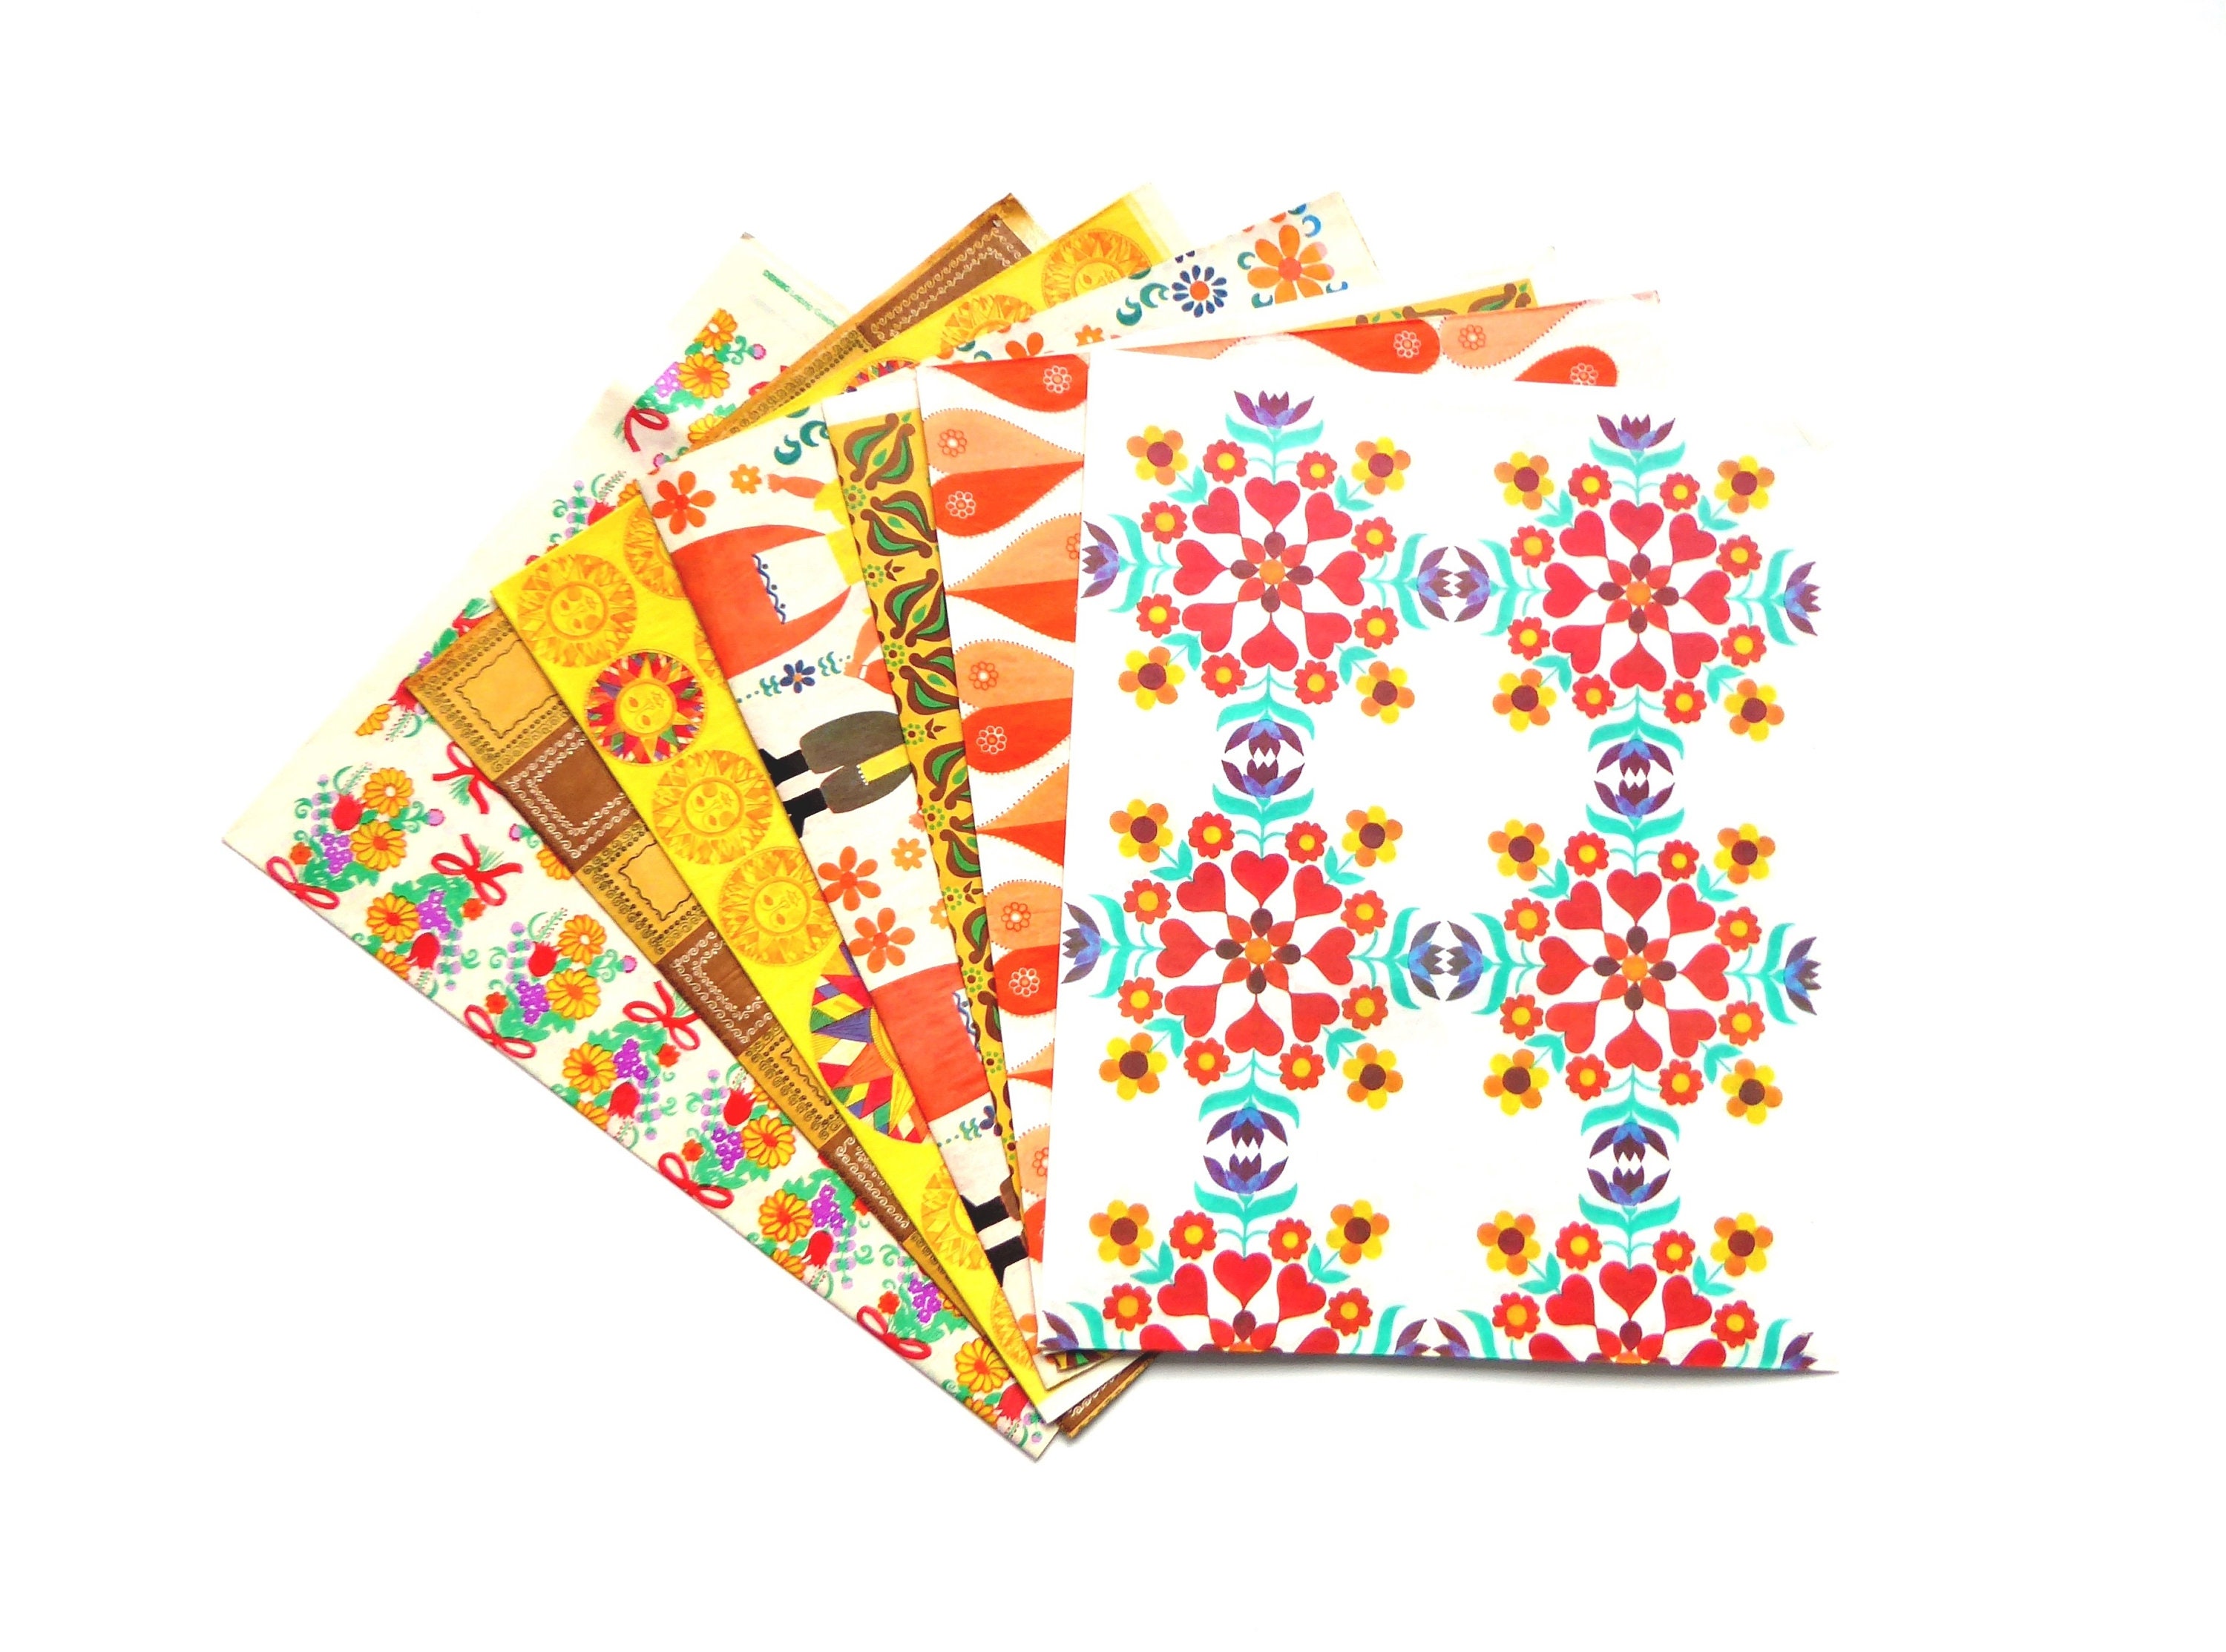 Shades of Teal Premium Tissue Paper, Premium Gift Wrap, Green Gift Wrap,  Green Tissue Paper 10x Sheets of Chosen Colour 